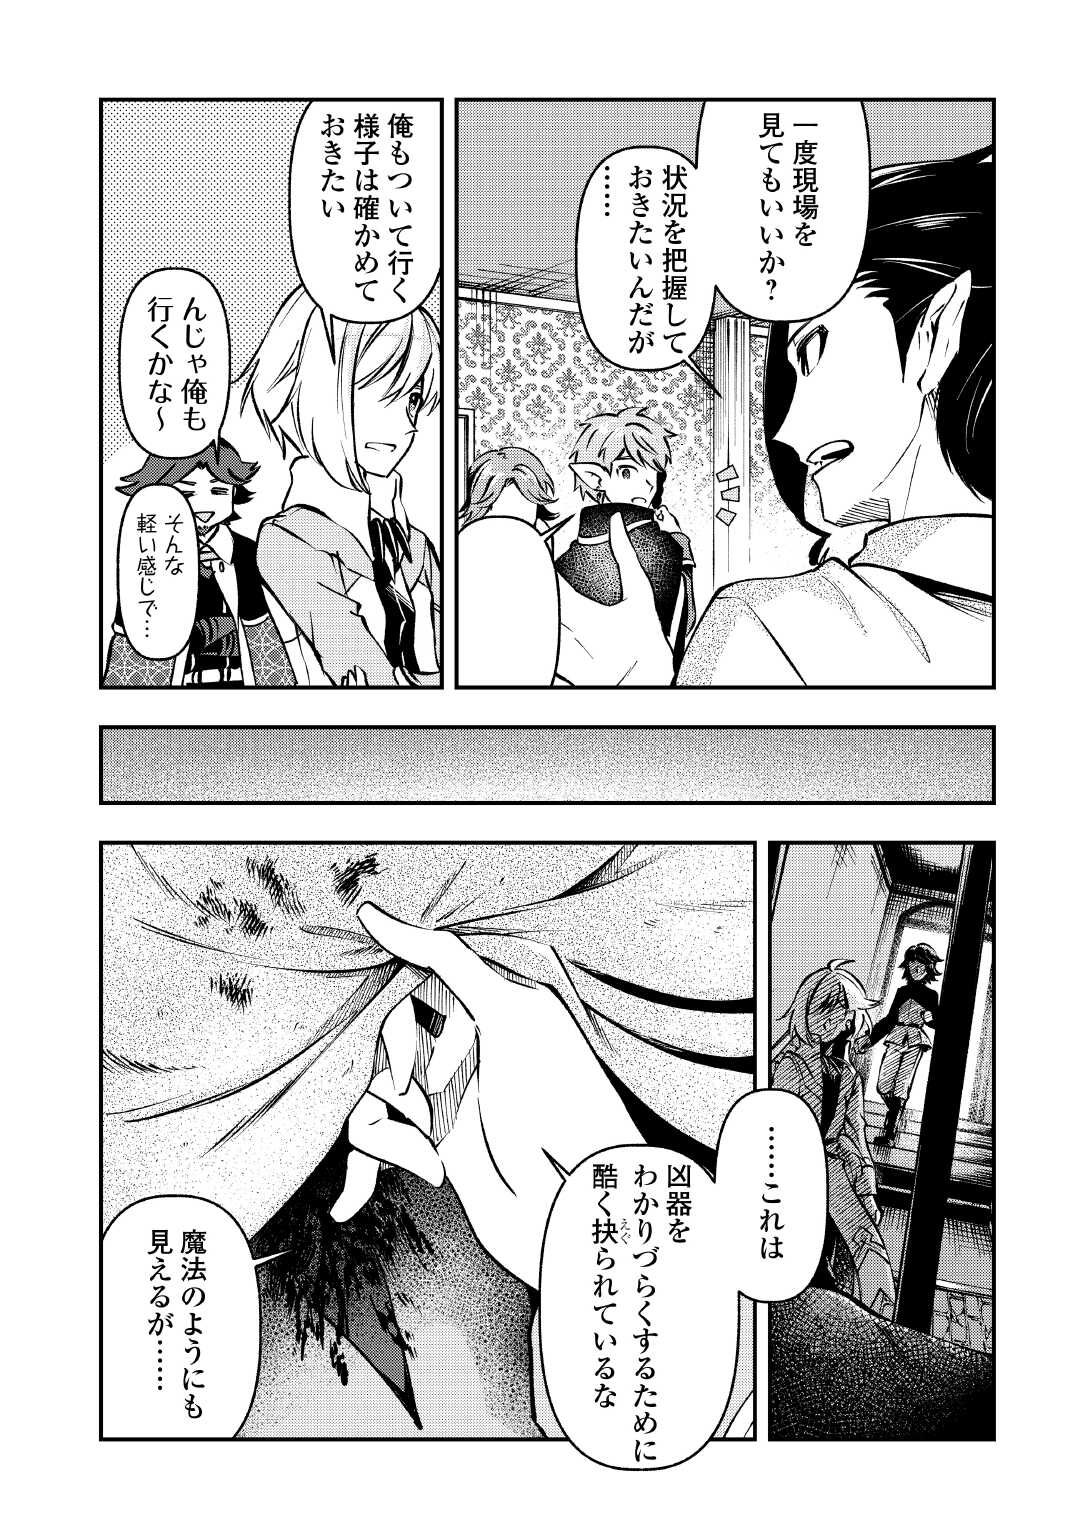 Osanago wa Saikyou no Tamer da to Kizuiteimasen! - Chapter 12 - Page 2